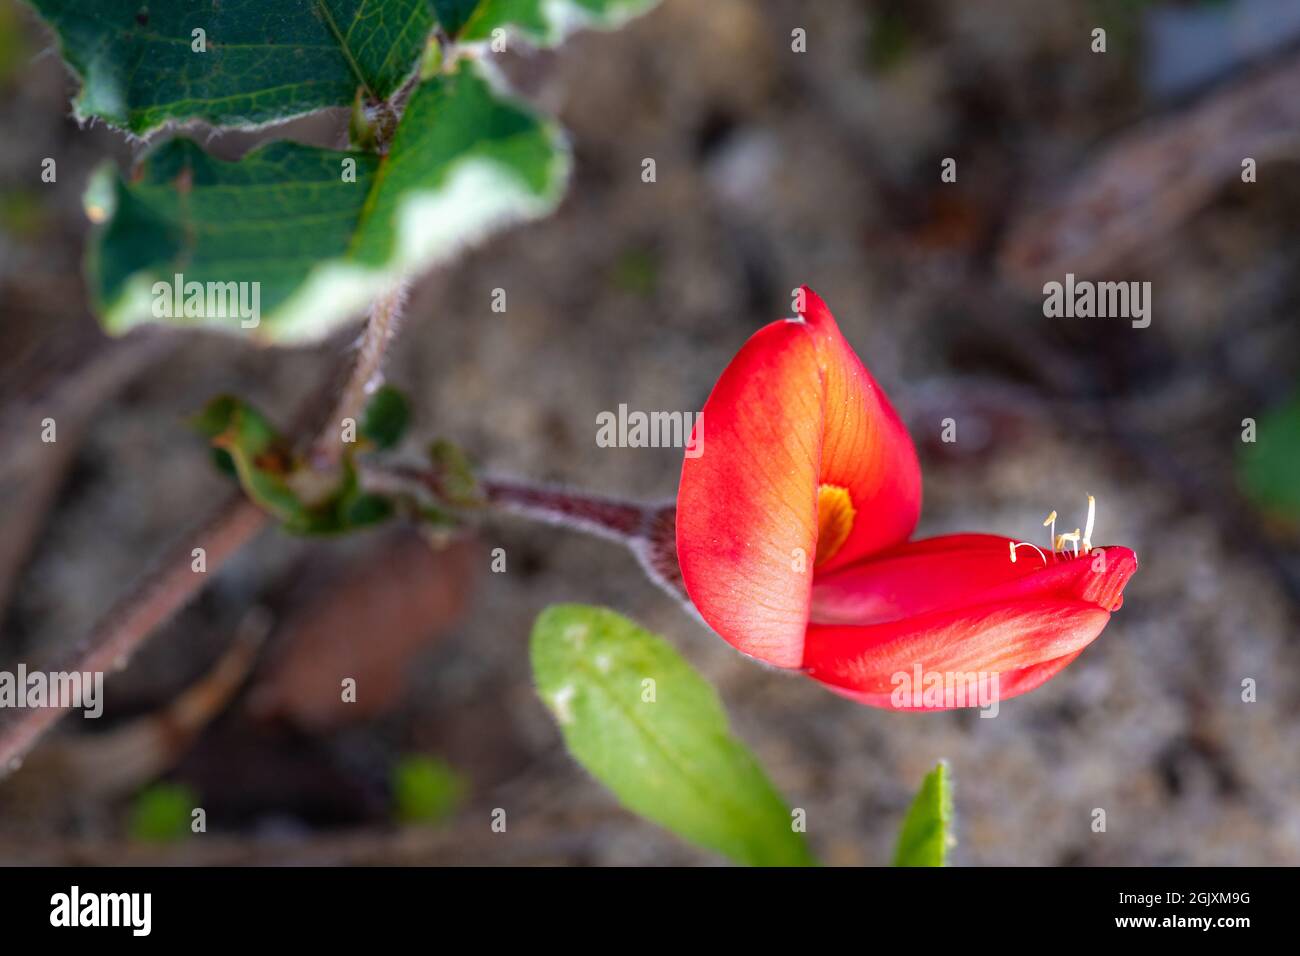 'Kennedia prostrata', nomi comuni sono Postman, Scarlet Runner e Scarlet Coral Pea. Un membro della famiglia Fabaceae endemica in Australia. Foto Stock